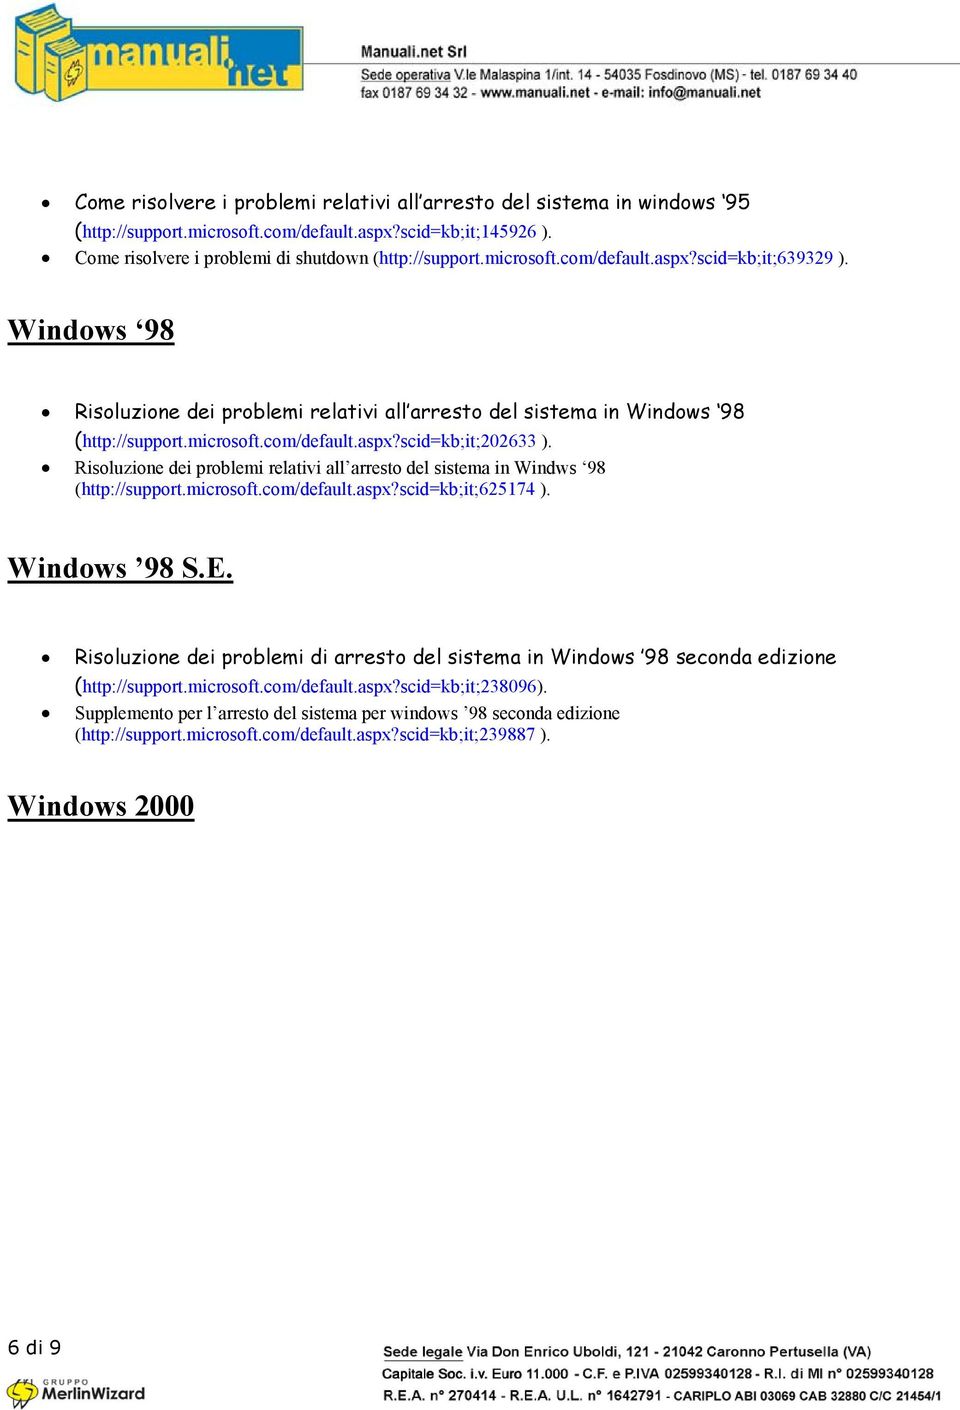 Risoluzione dei problemi relativi all arresto del sistema in Windws 98 (http://support.microsoft.com/default.aspx?scid=kb;it;625174 ). Windows 98 S.E.